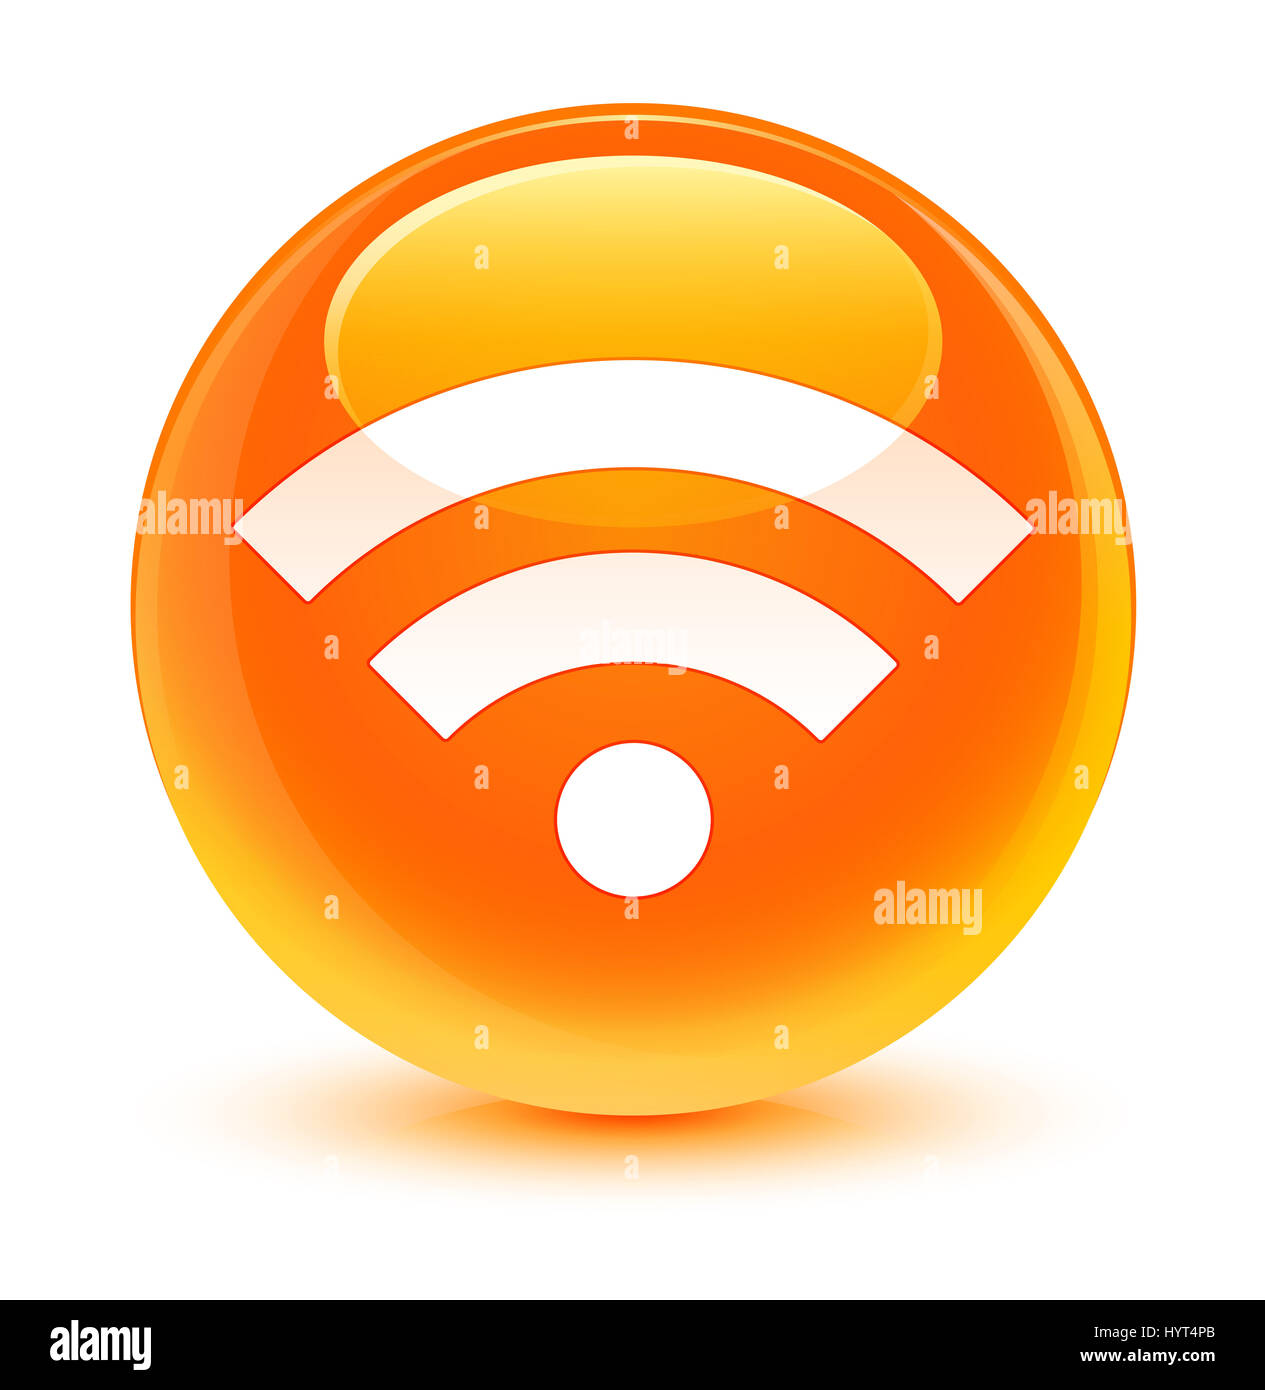 Connexion Wi-Fi au réseau local isolé sur l'icône bouton rond orange vitreux abstract illustration Banque D'Images